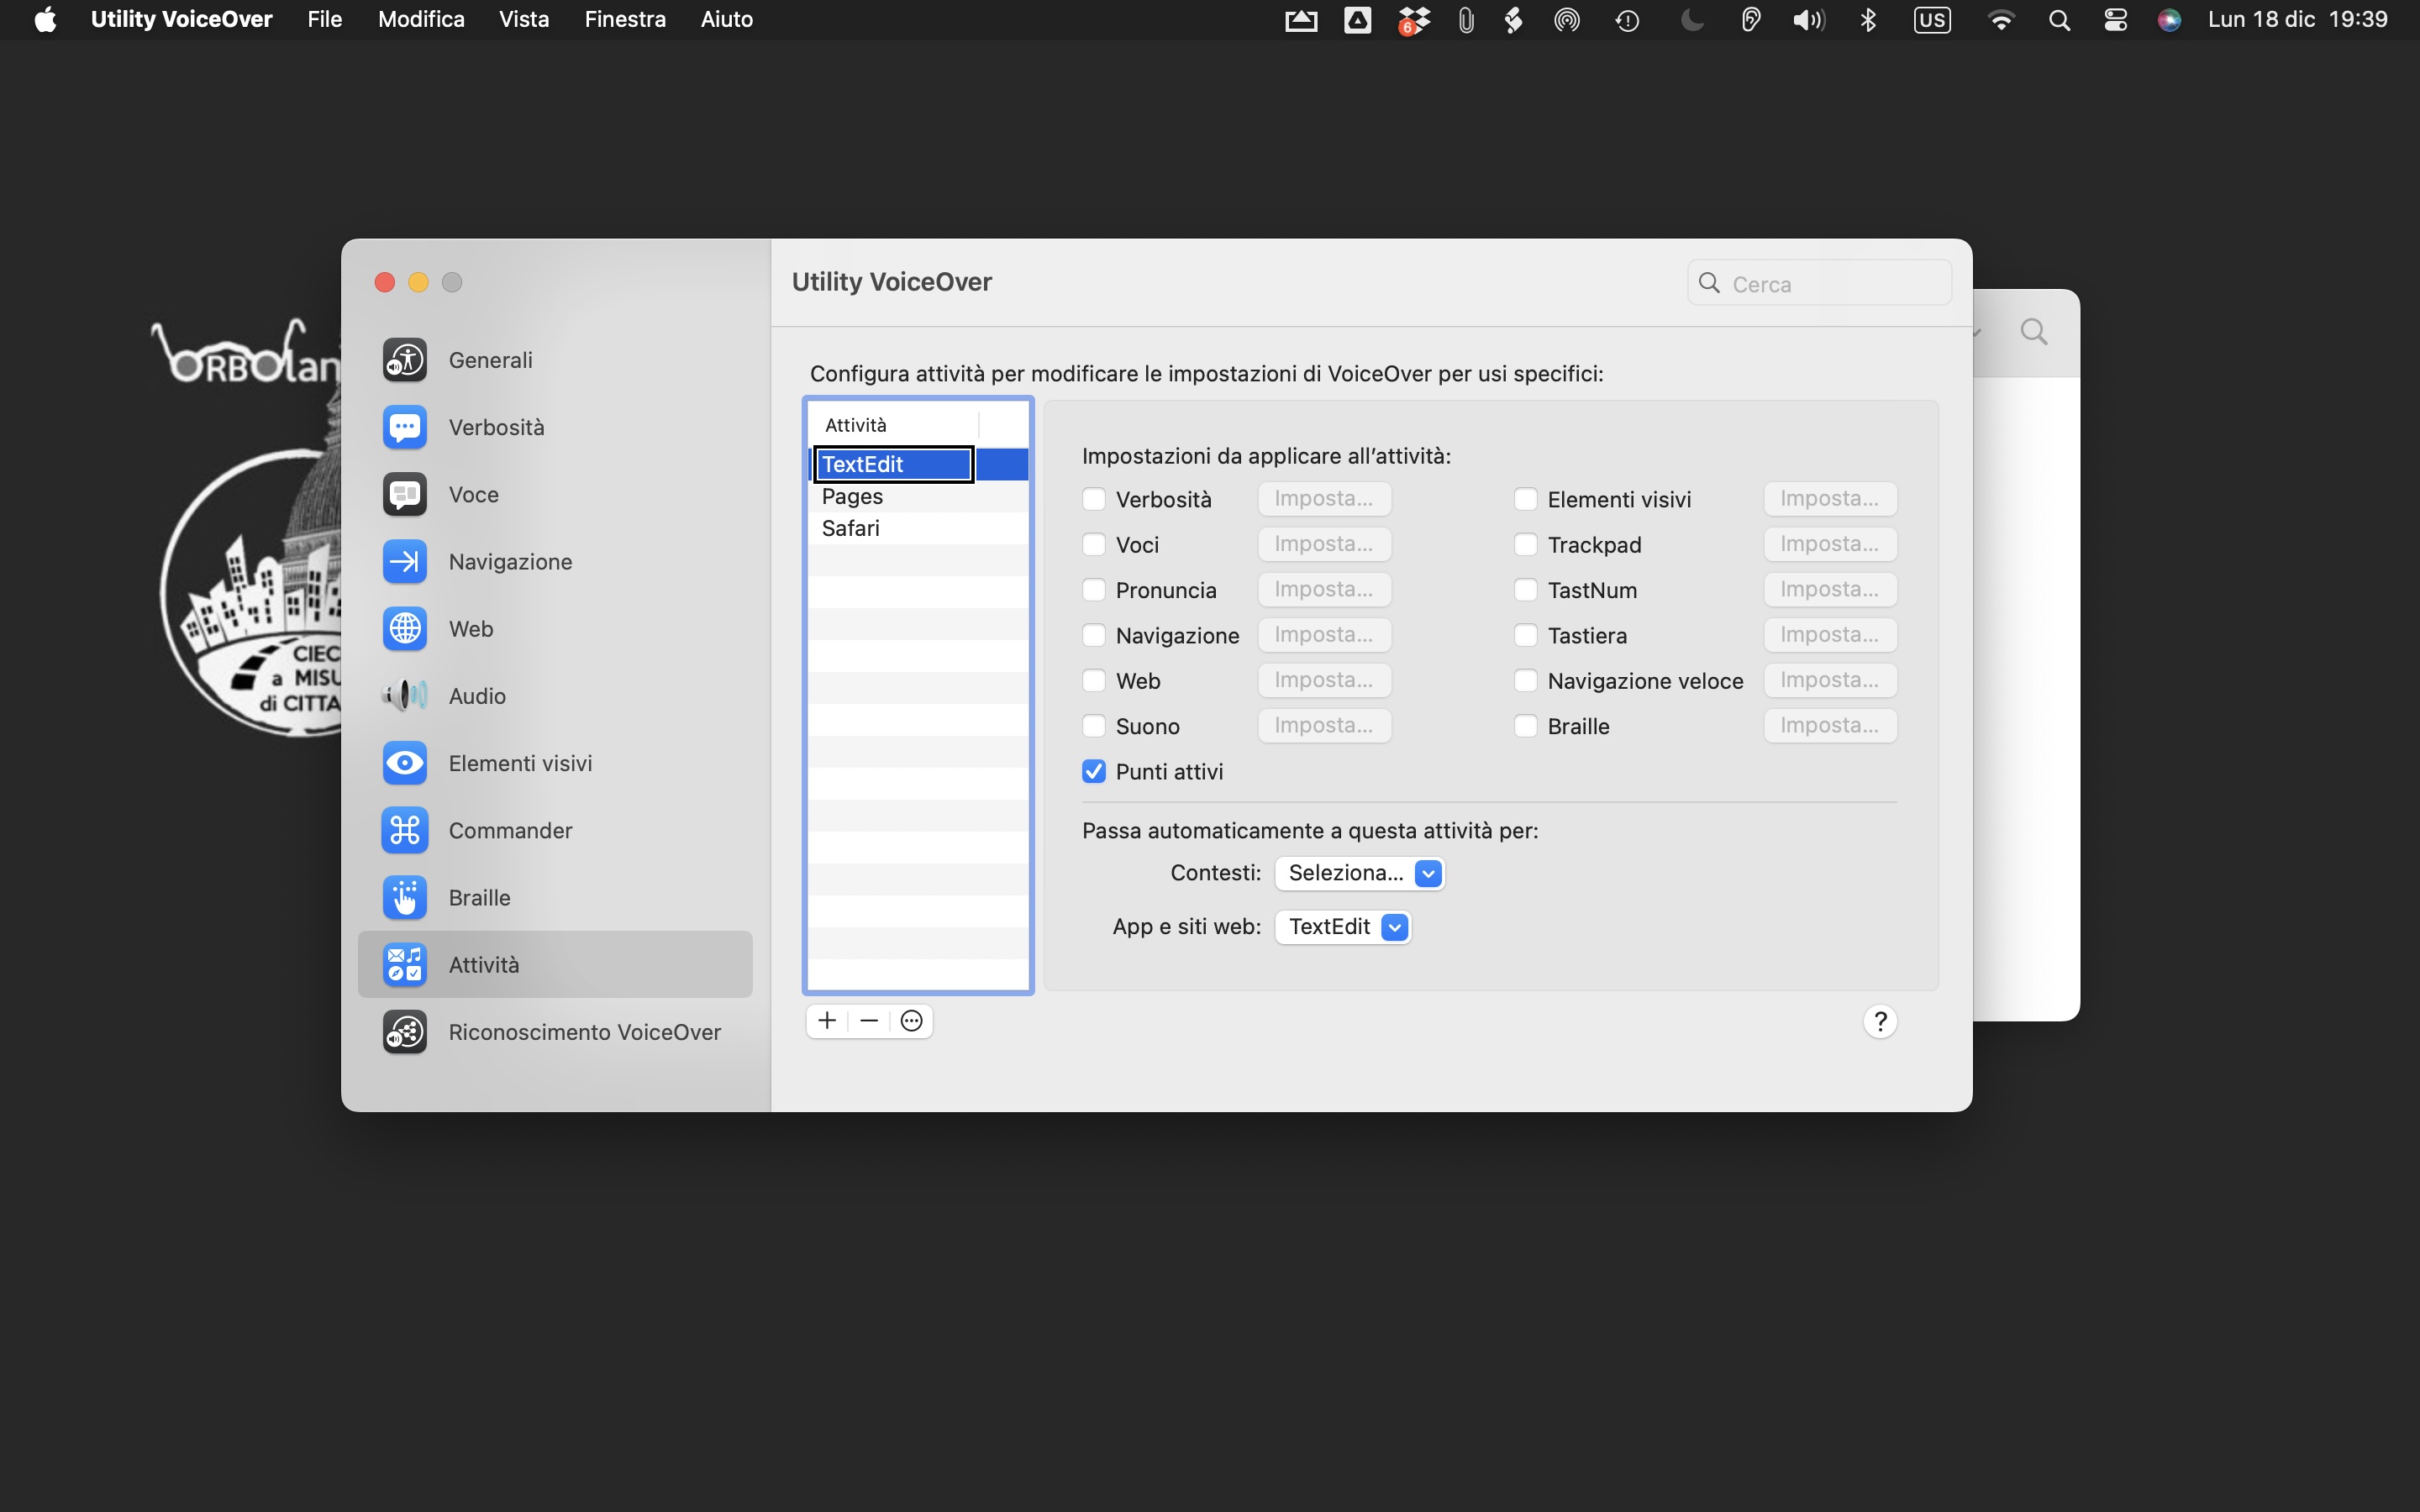 L'immagine mostra la schermata del desktop di un Mac con, in primo piano, la finestra dell'applicazione  Utility VoiceOver. È selezionata La categoria Attività